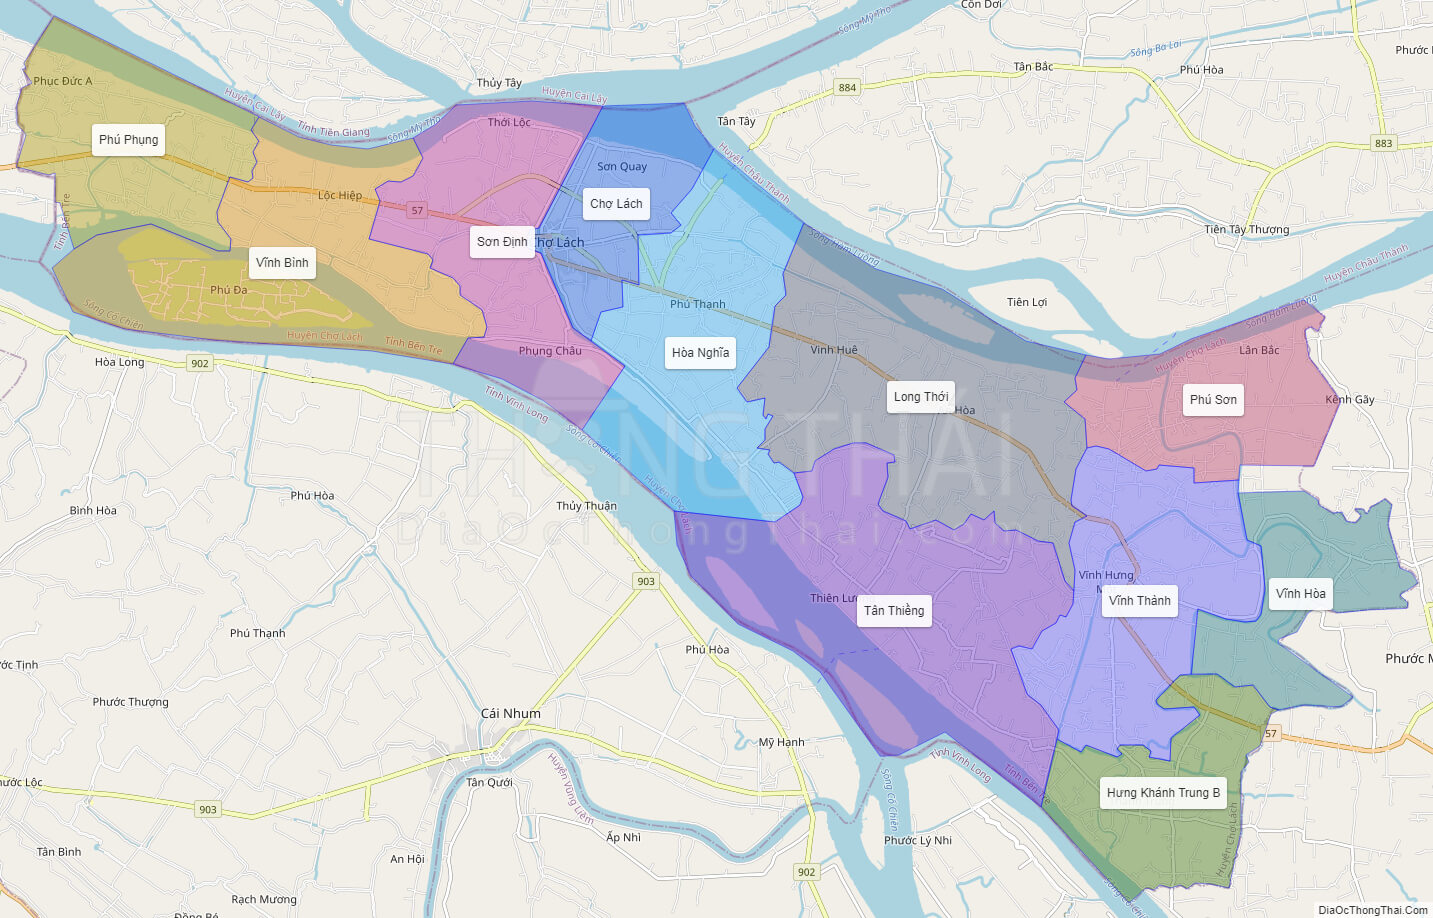 Bản đồ huyện Chợ Lách tỉnh Bến Tre ở đâu trên Google Maps?